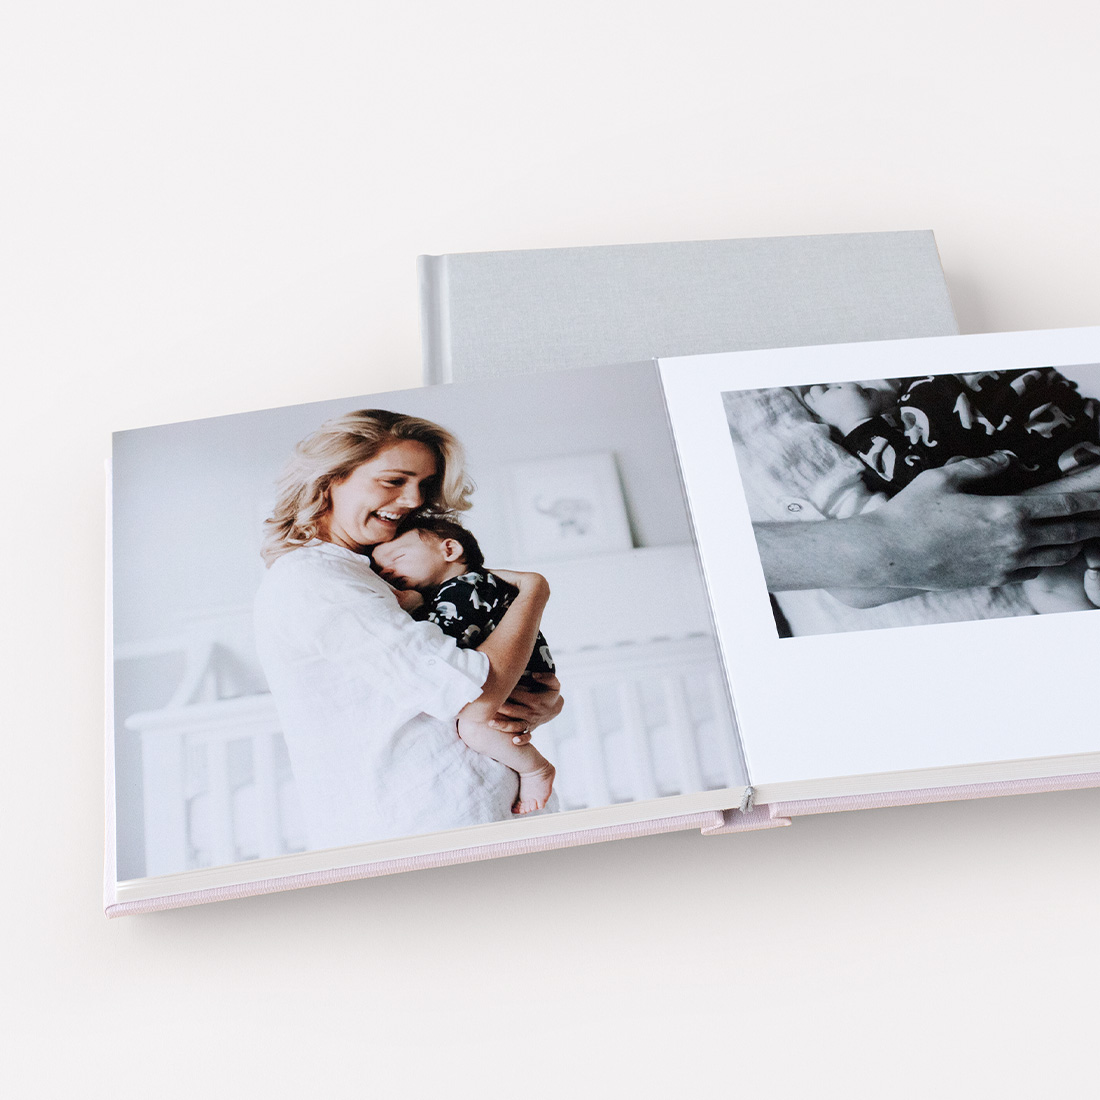 Buy La Lente Premium Photo Album, Large Customizable, 50 pages/100